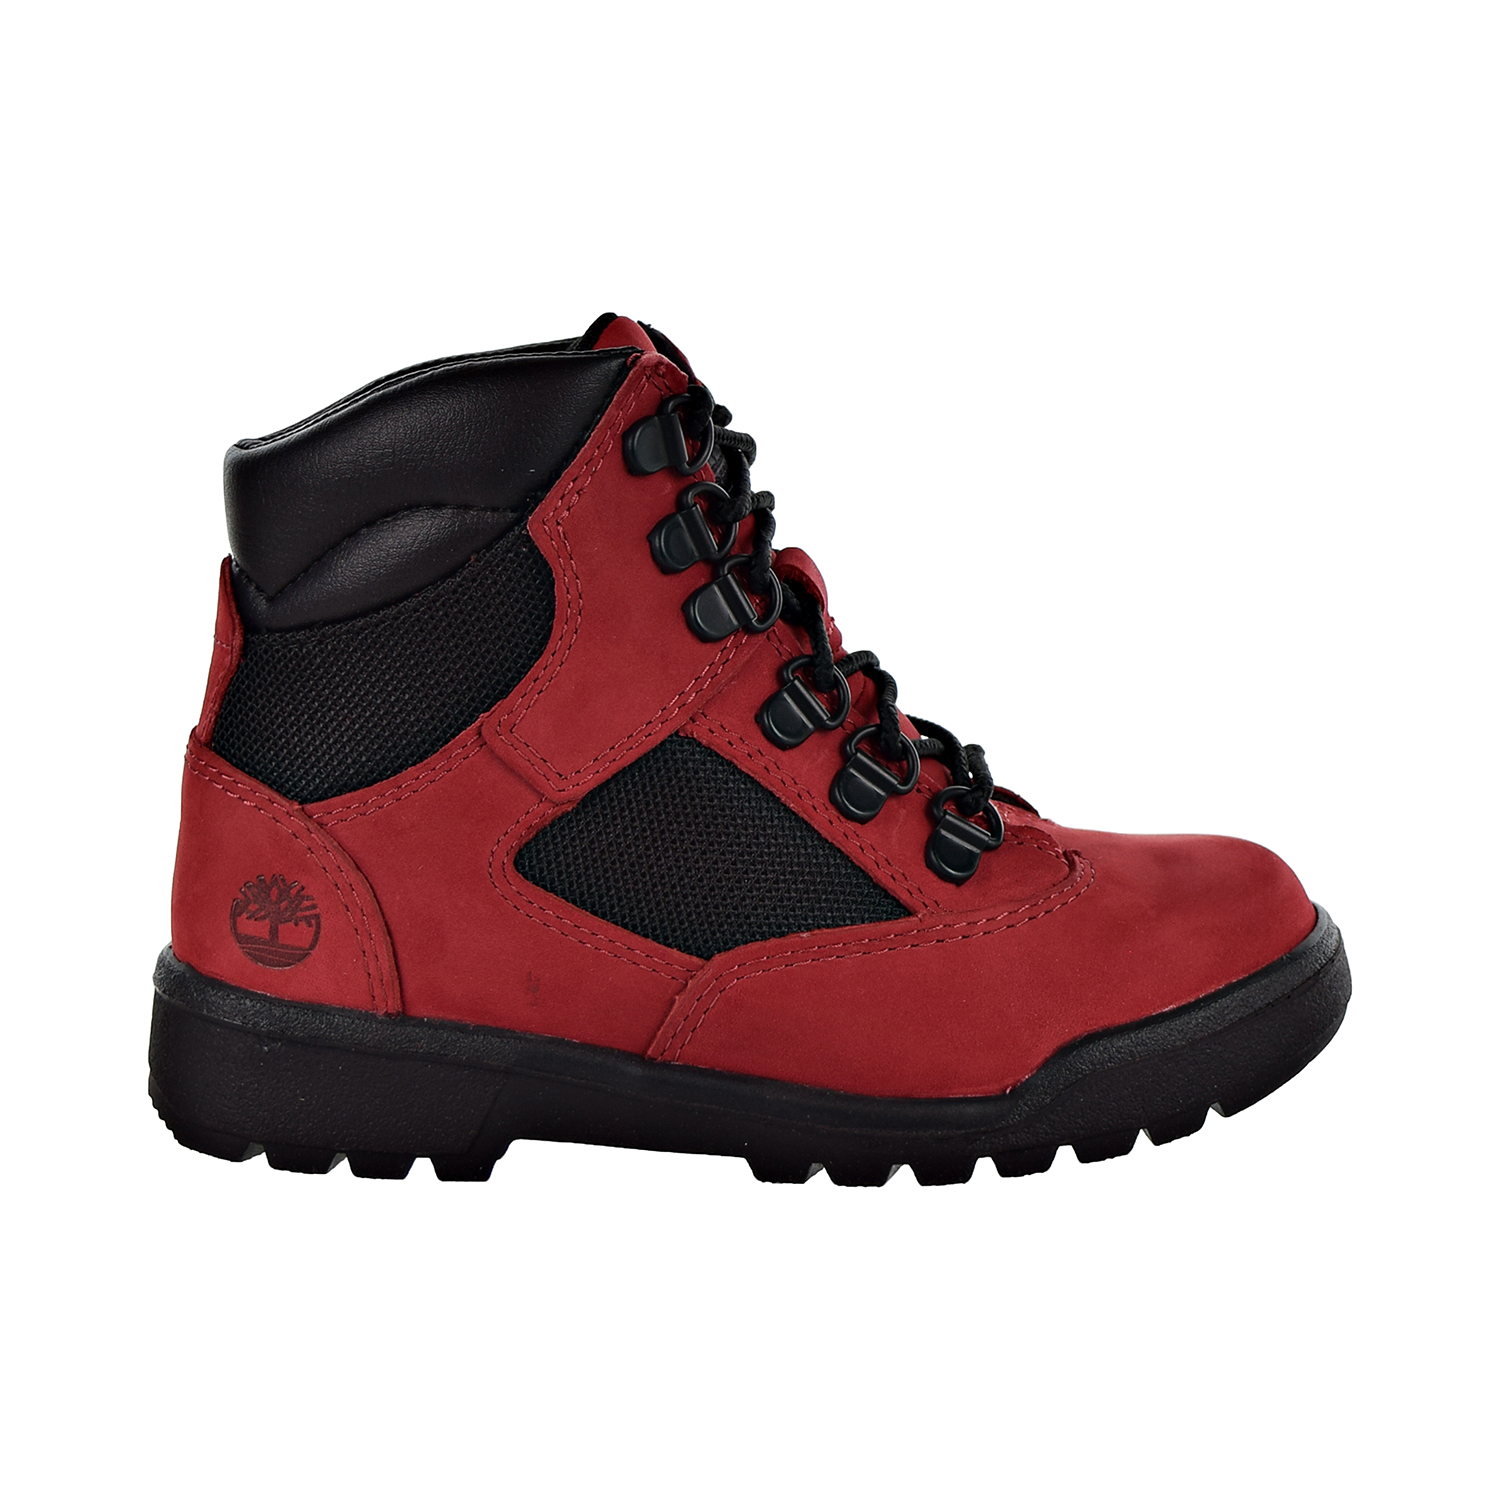 Timberland 6' Field Boot L-F Big Kids' Shoes Red TB0A1RG5 | eBay